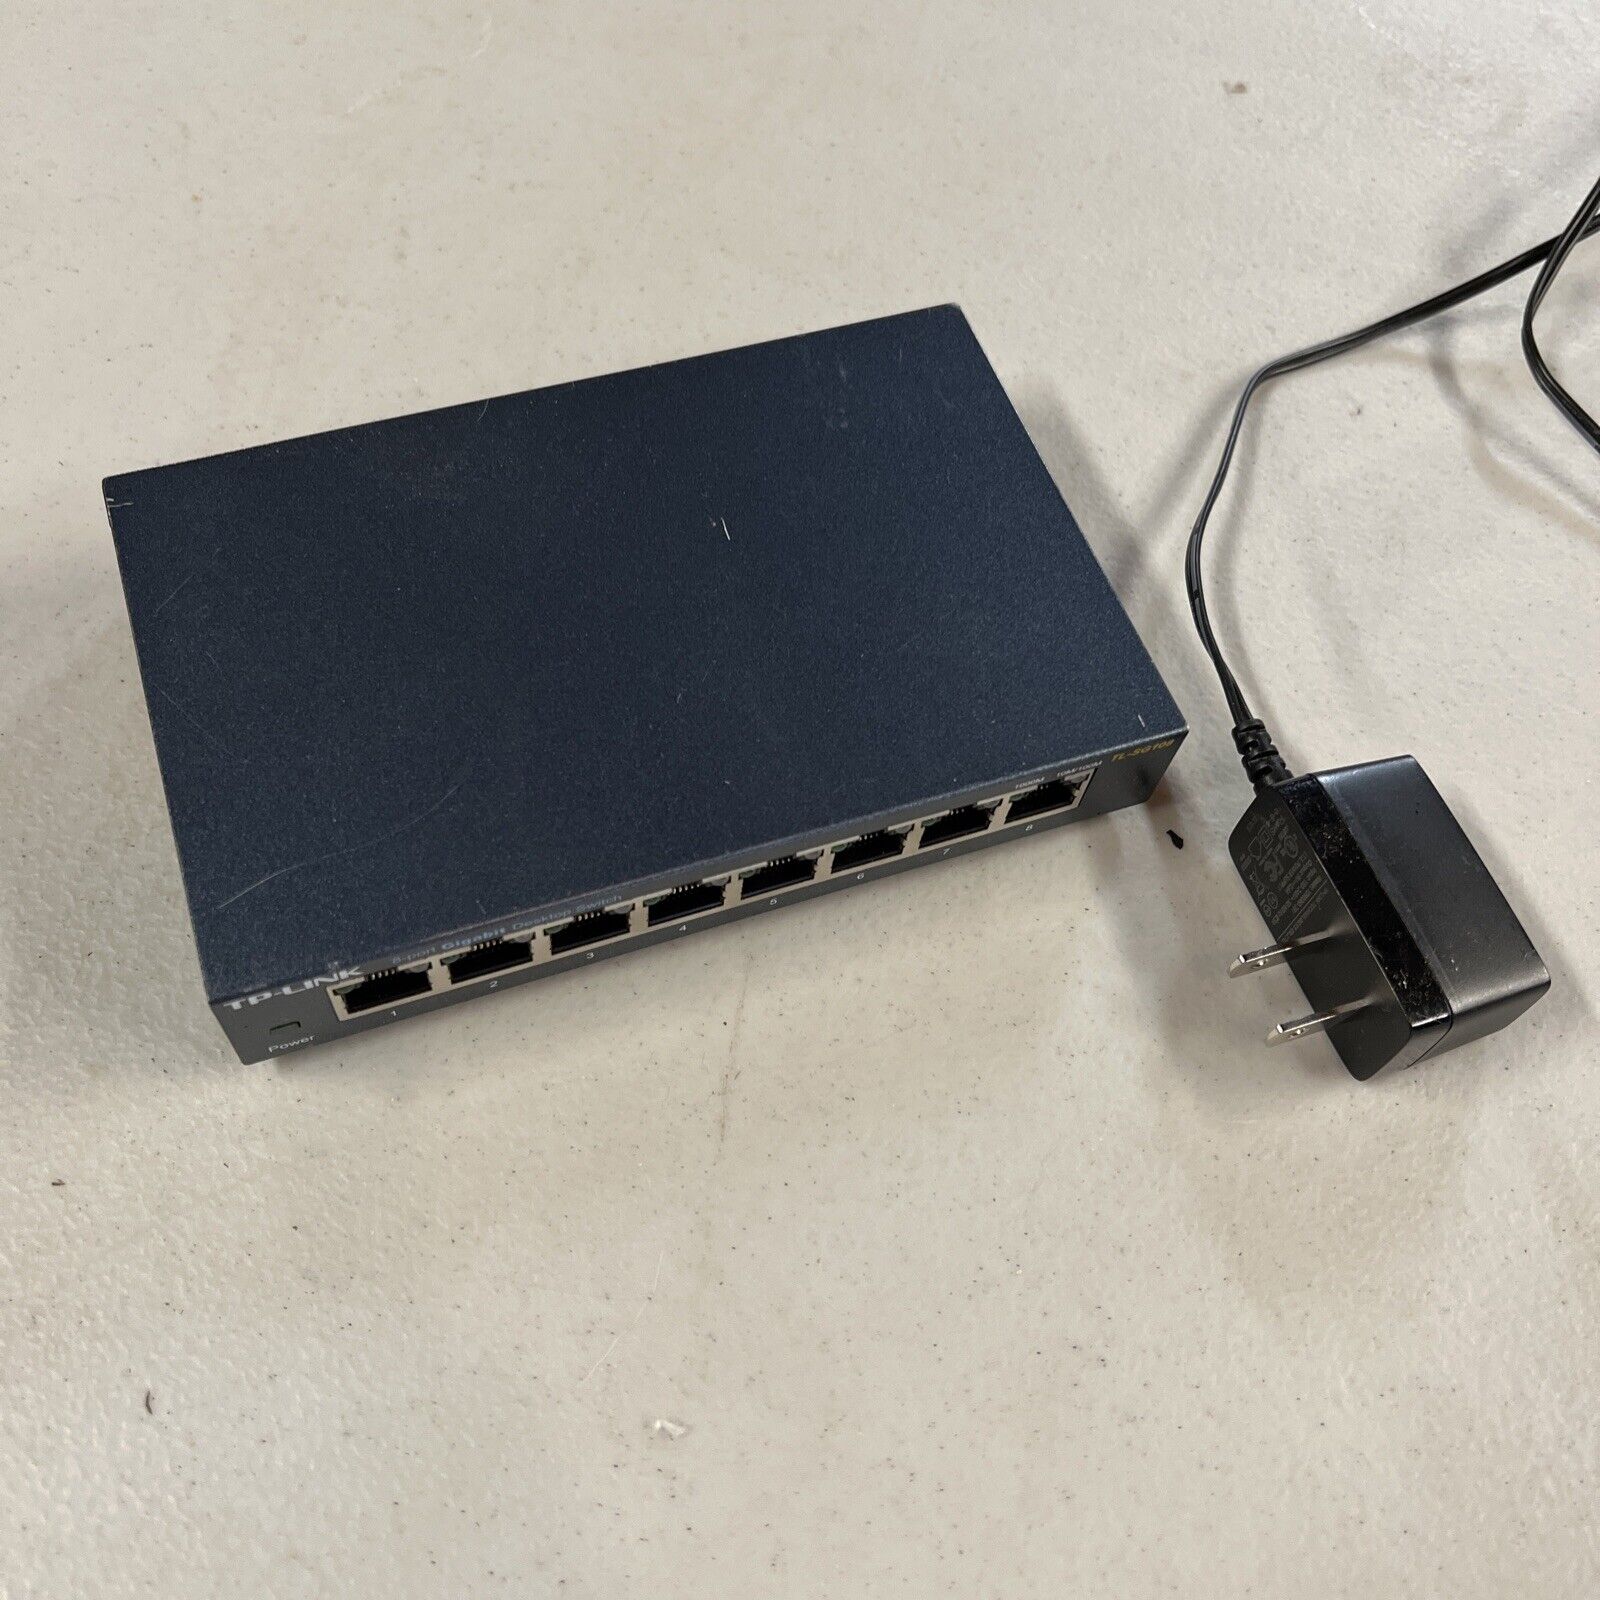 TP-Link 8 Port Gigabit Ethernet Network Switch (TL-SG108)